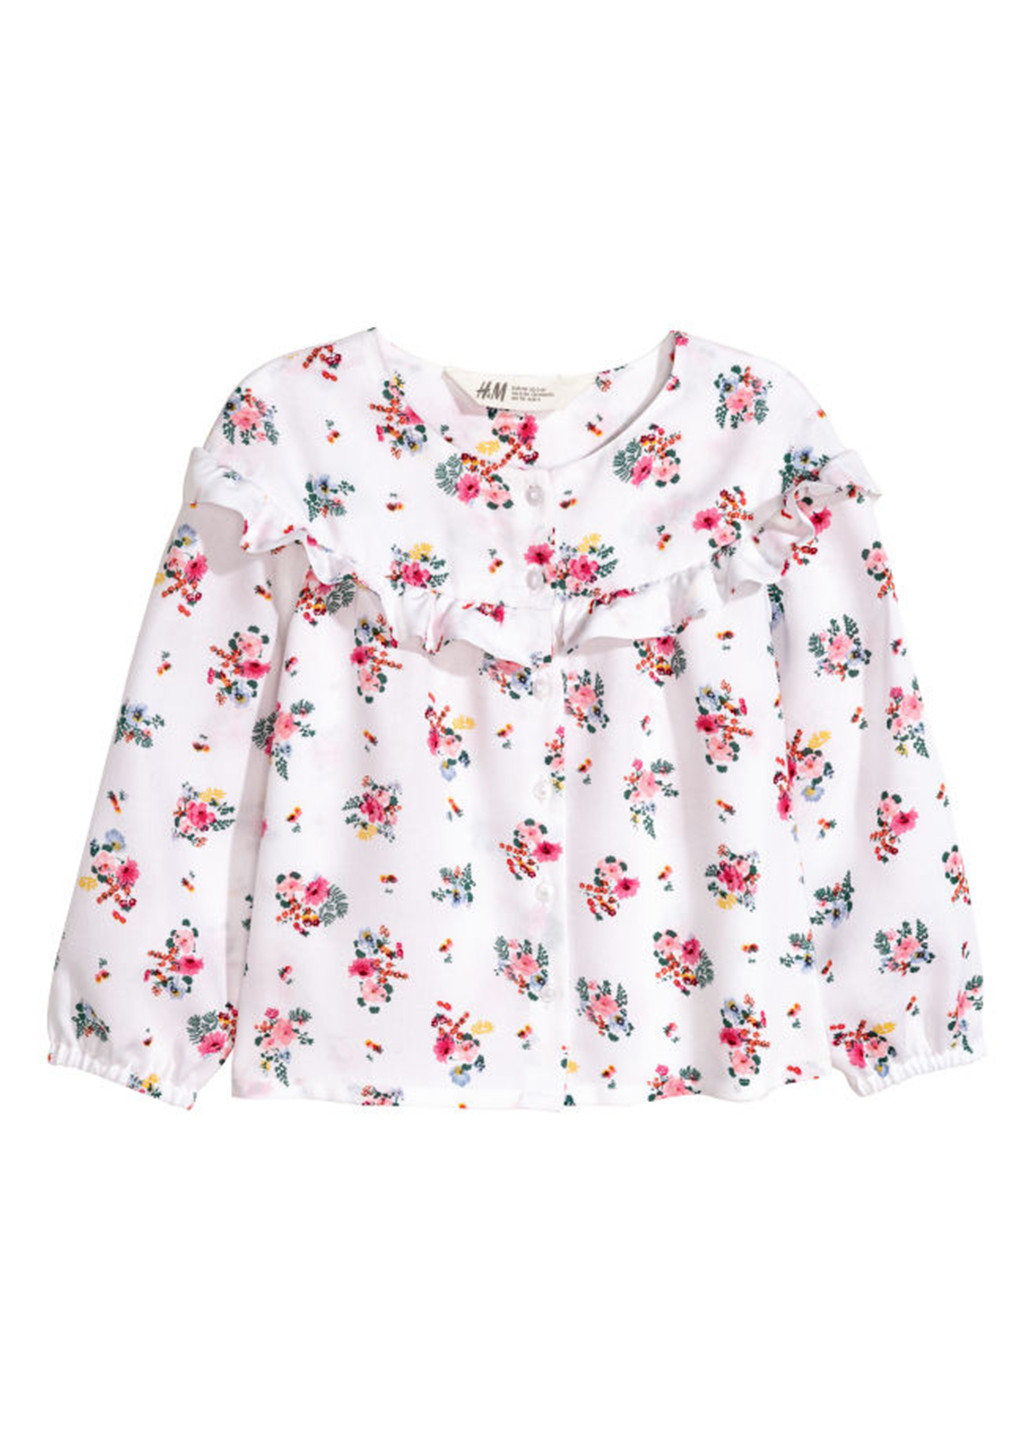 Белая цветочной расцветки блузка H&M демисезонная